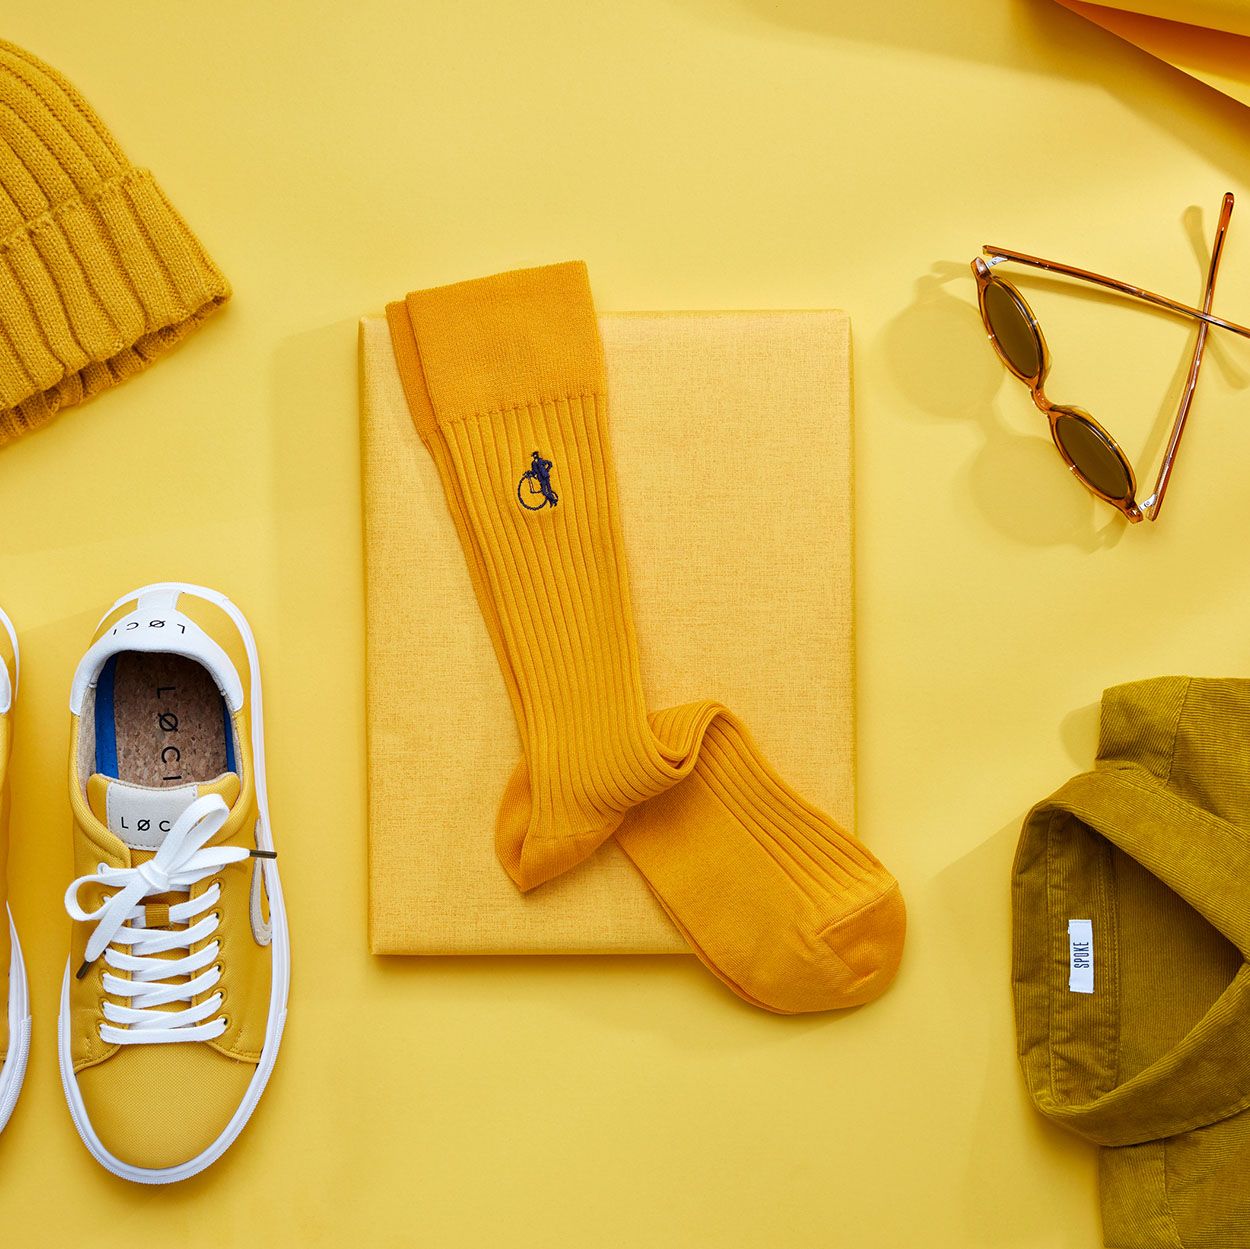 Men's Guide: Styling Yellow Socks - London Sock Company